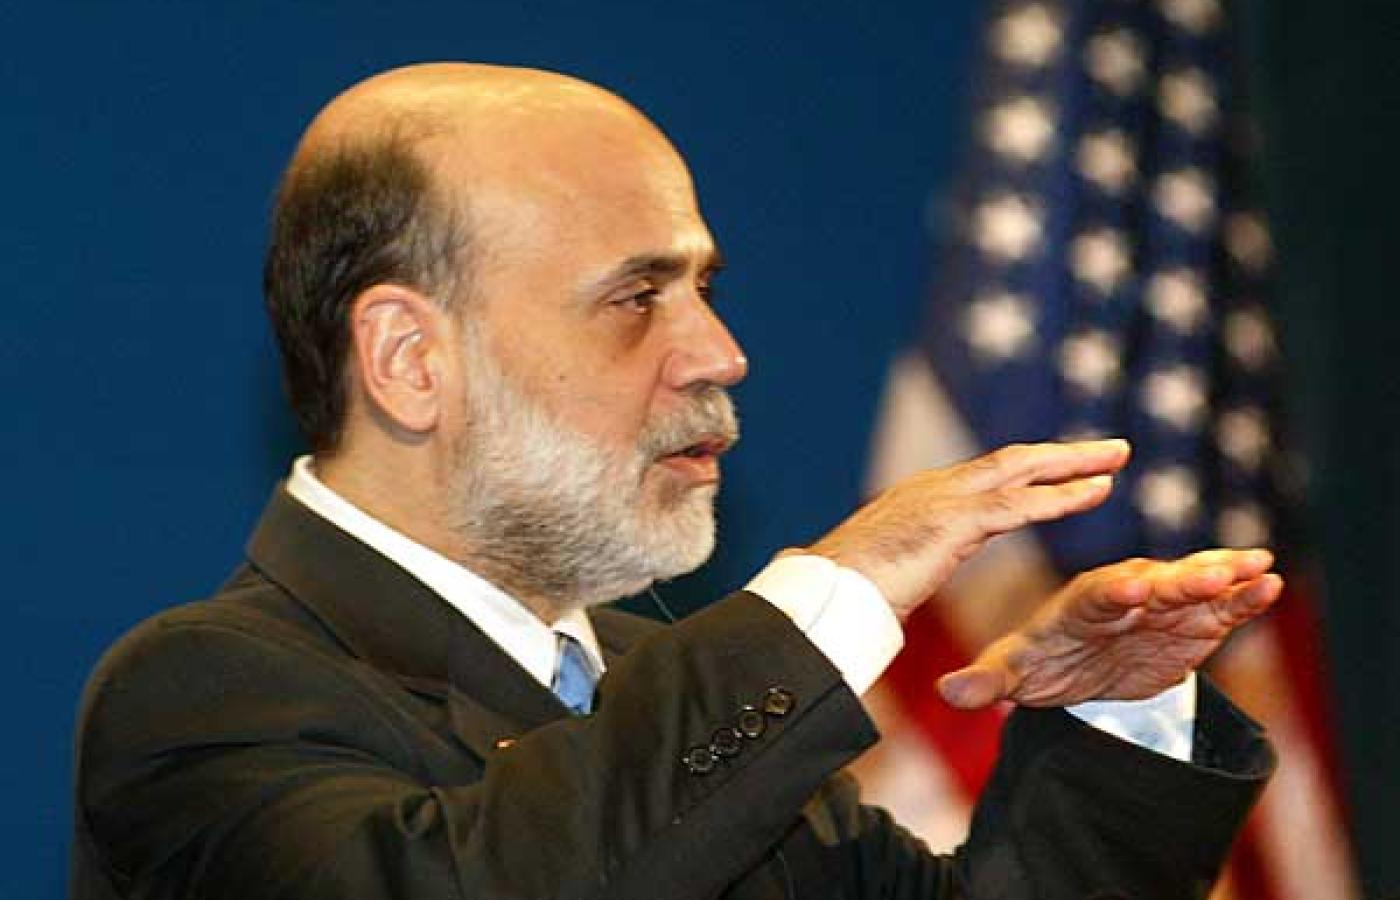 Ben Bernanke ani za młodu, ani później nie obnosił się ze swymi politycznymi sympatiami. Wiadomo tylko, że popiera niskie podatki. Fot. Stephen Shaver / UPI / BEW